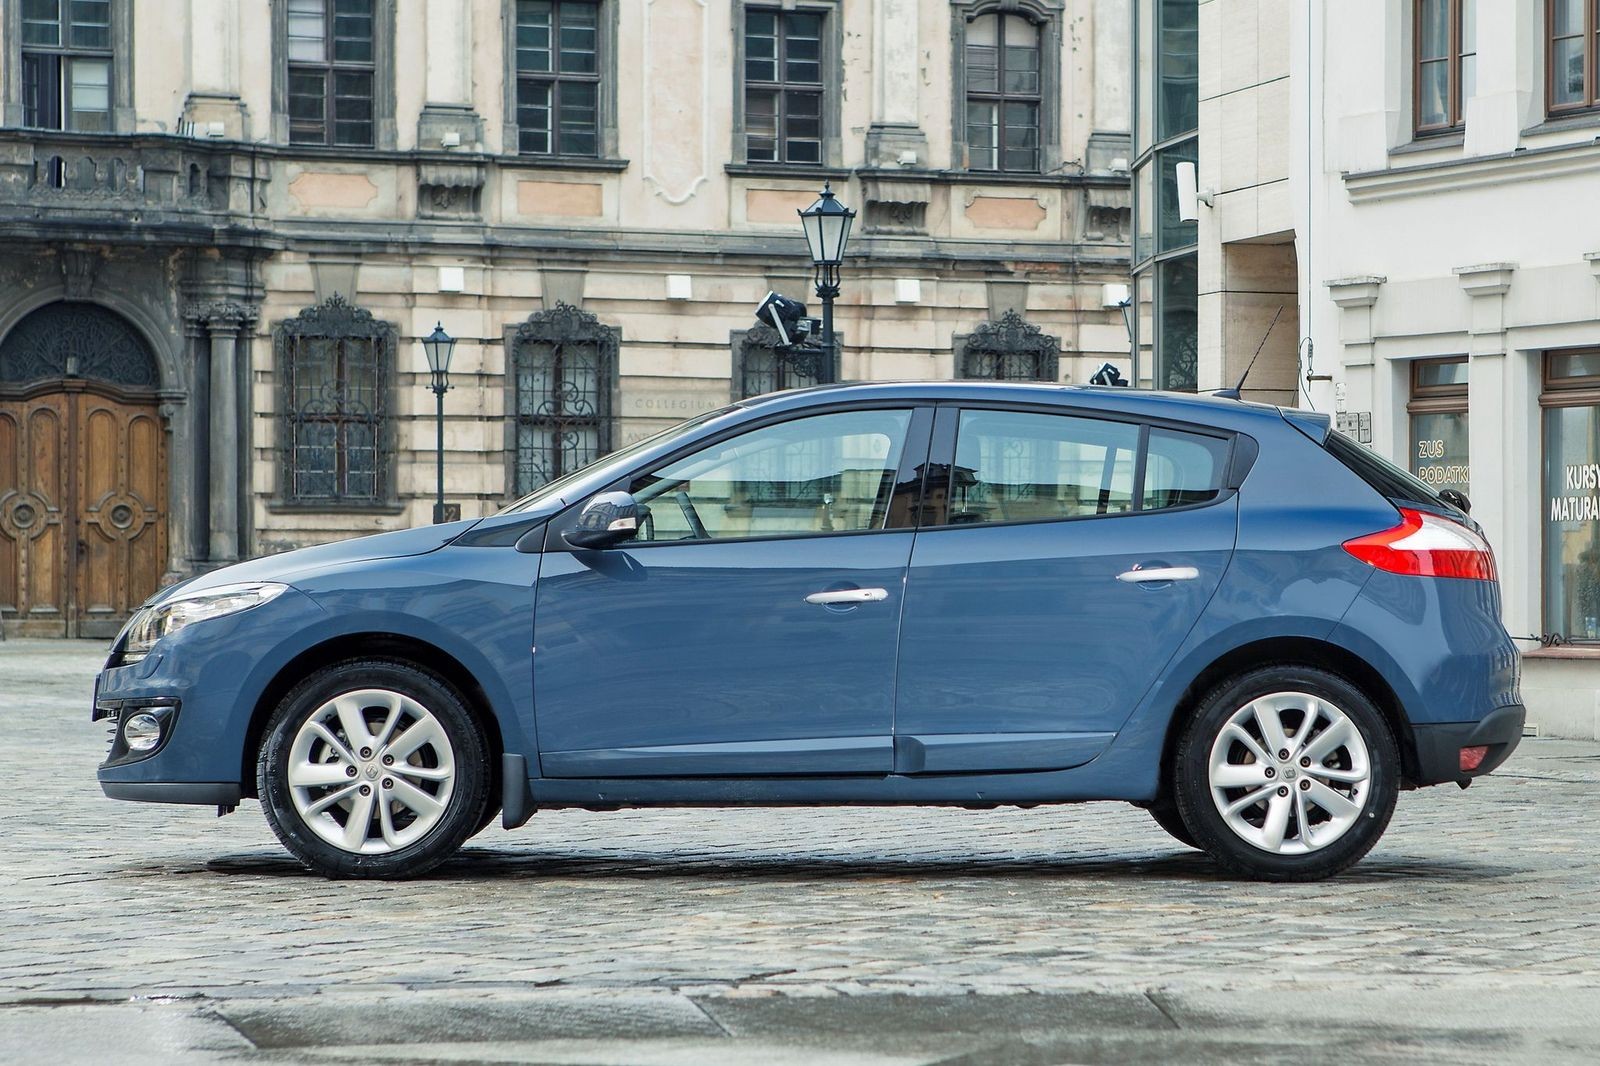 С-класс по цене подержанной Гранты: стоит ли покупать Renault Megane III за 650 тысяч рублей